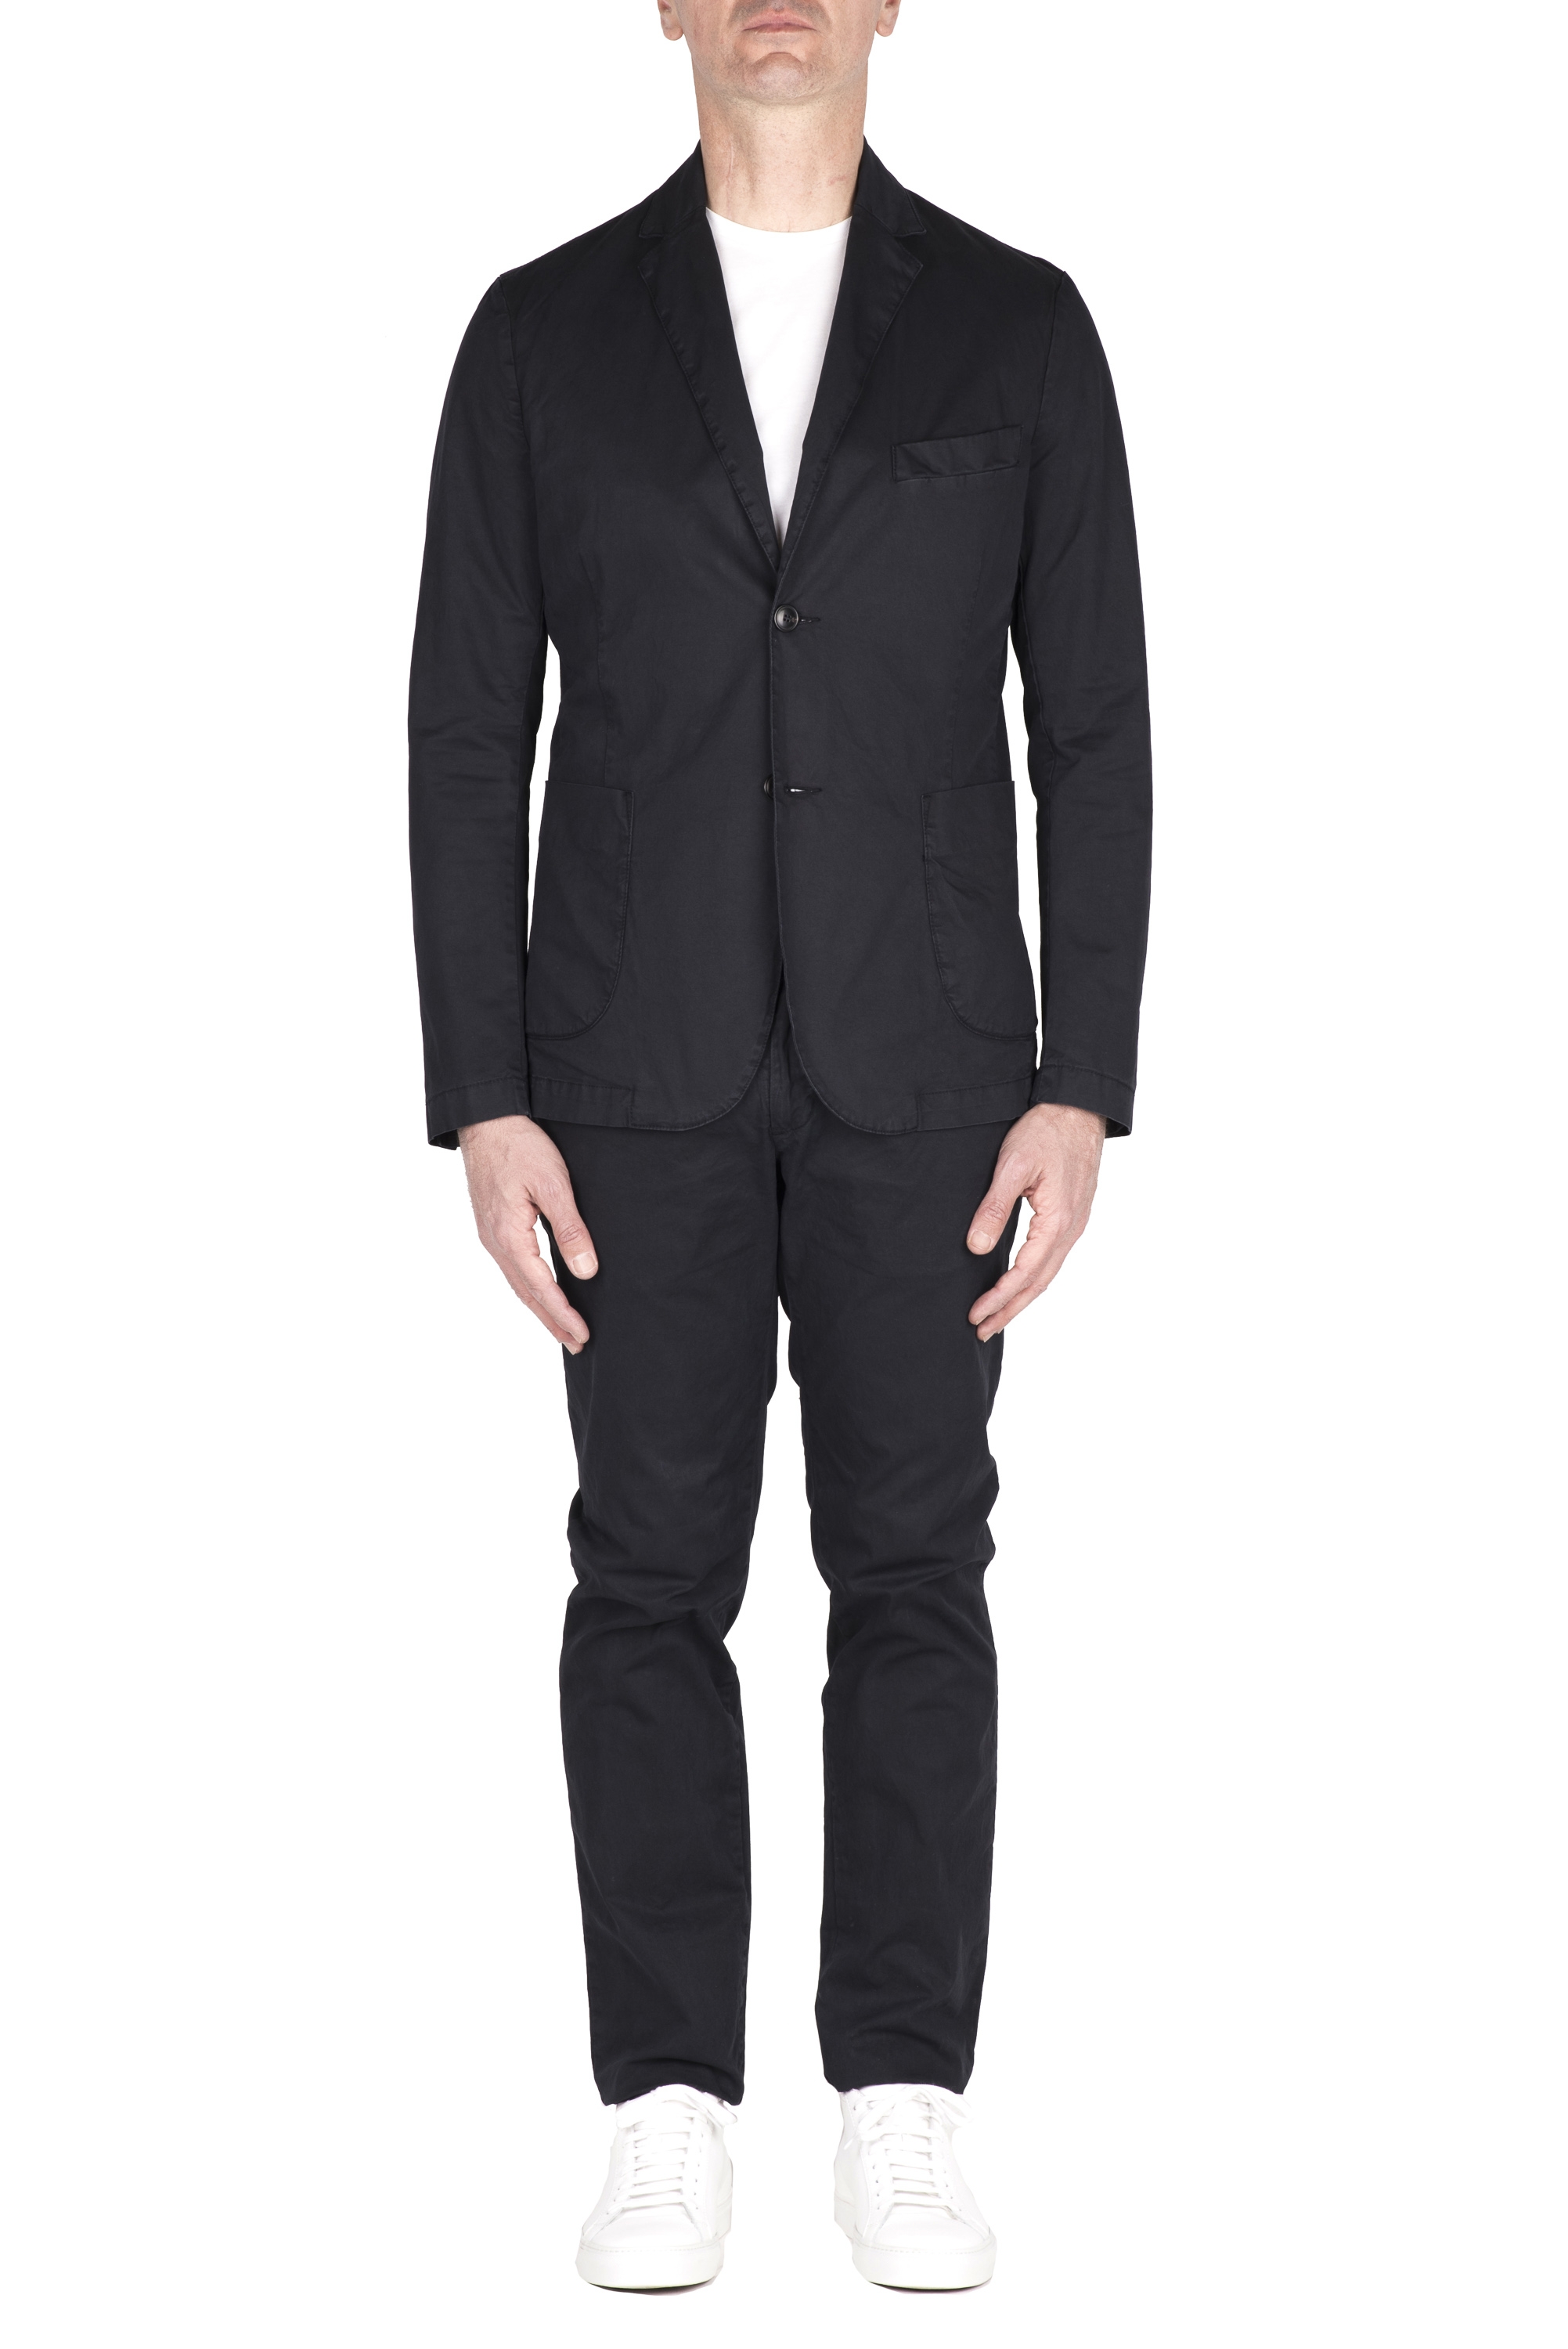 SBU 05114_24SS Blue cotton sport suit blazer and trouser 01